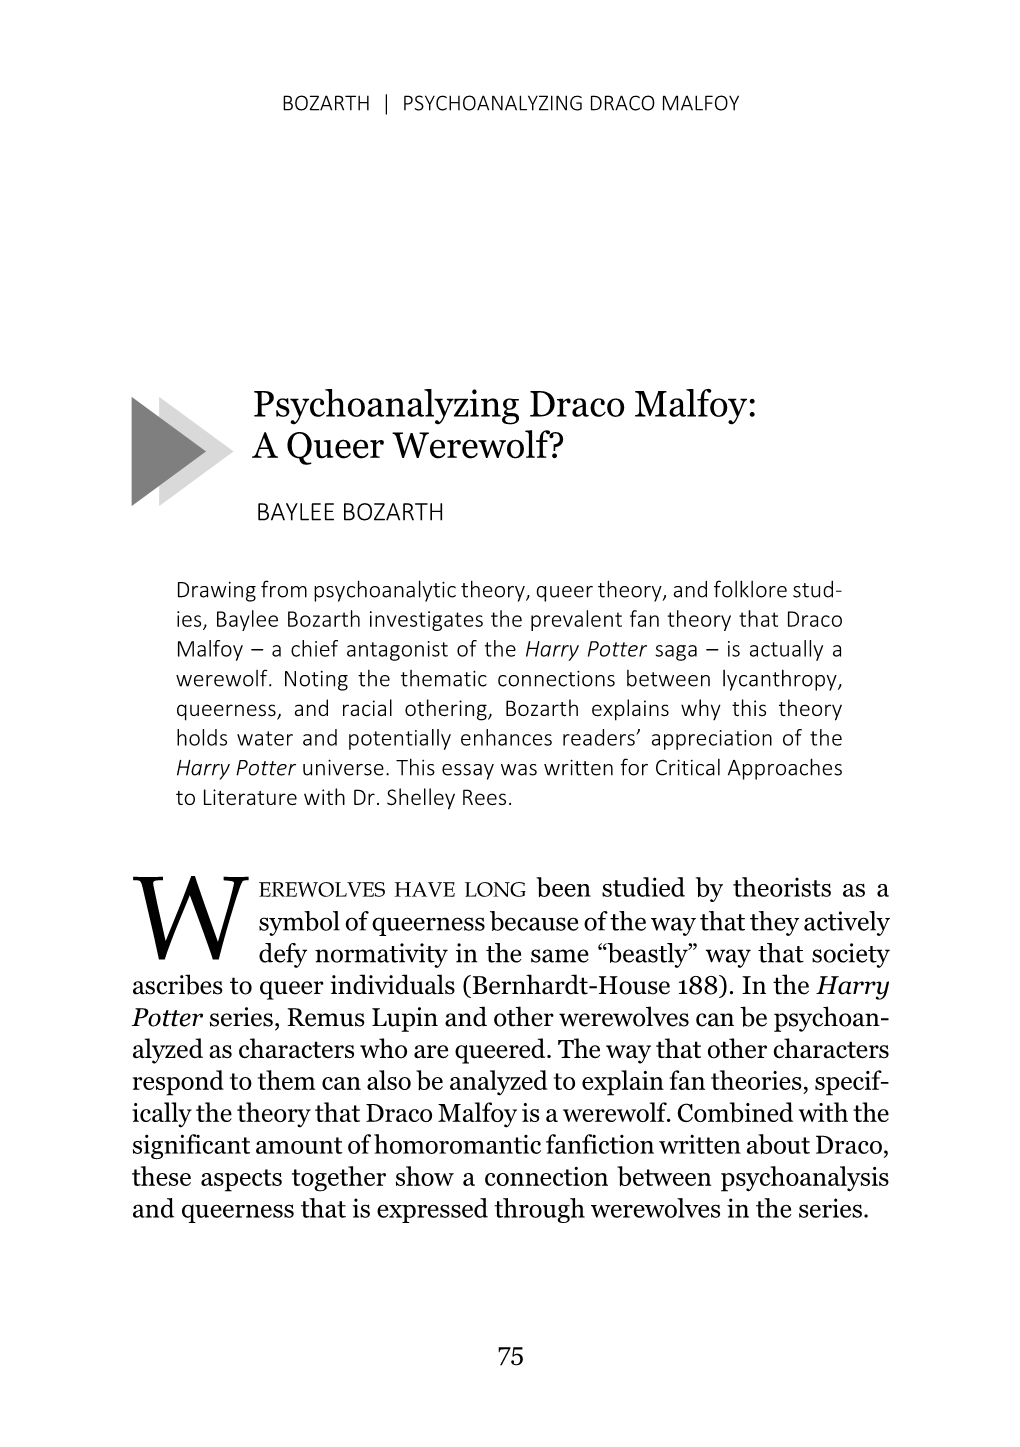 Psychoanalyzing Draco Malfoy: a Queer Werewolf?